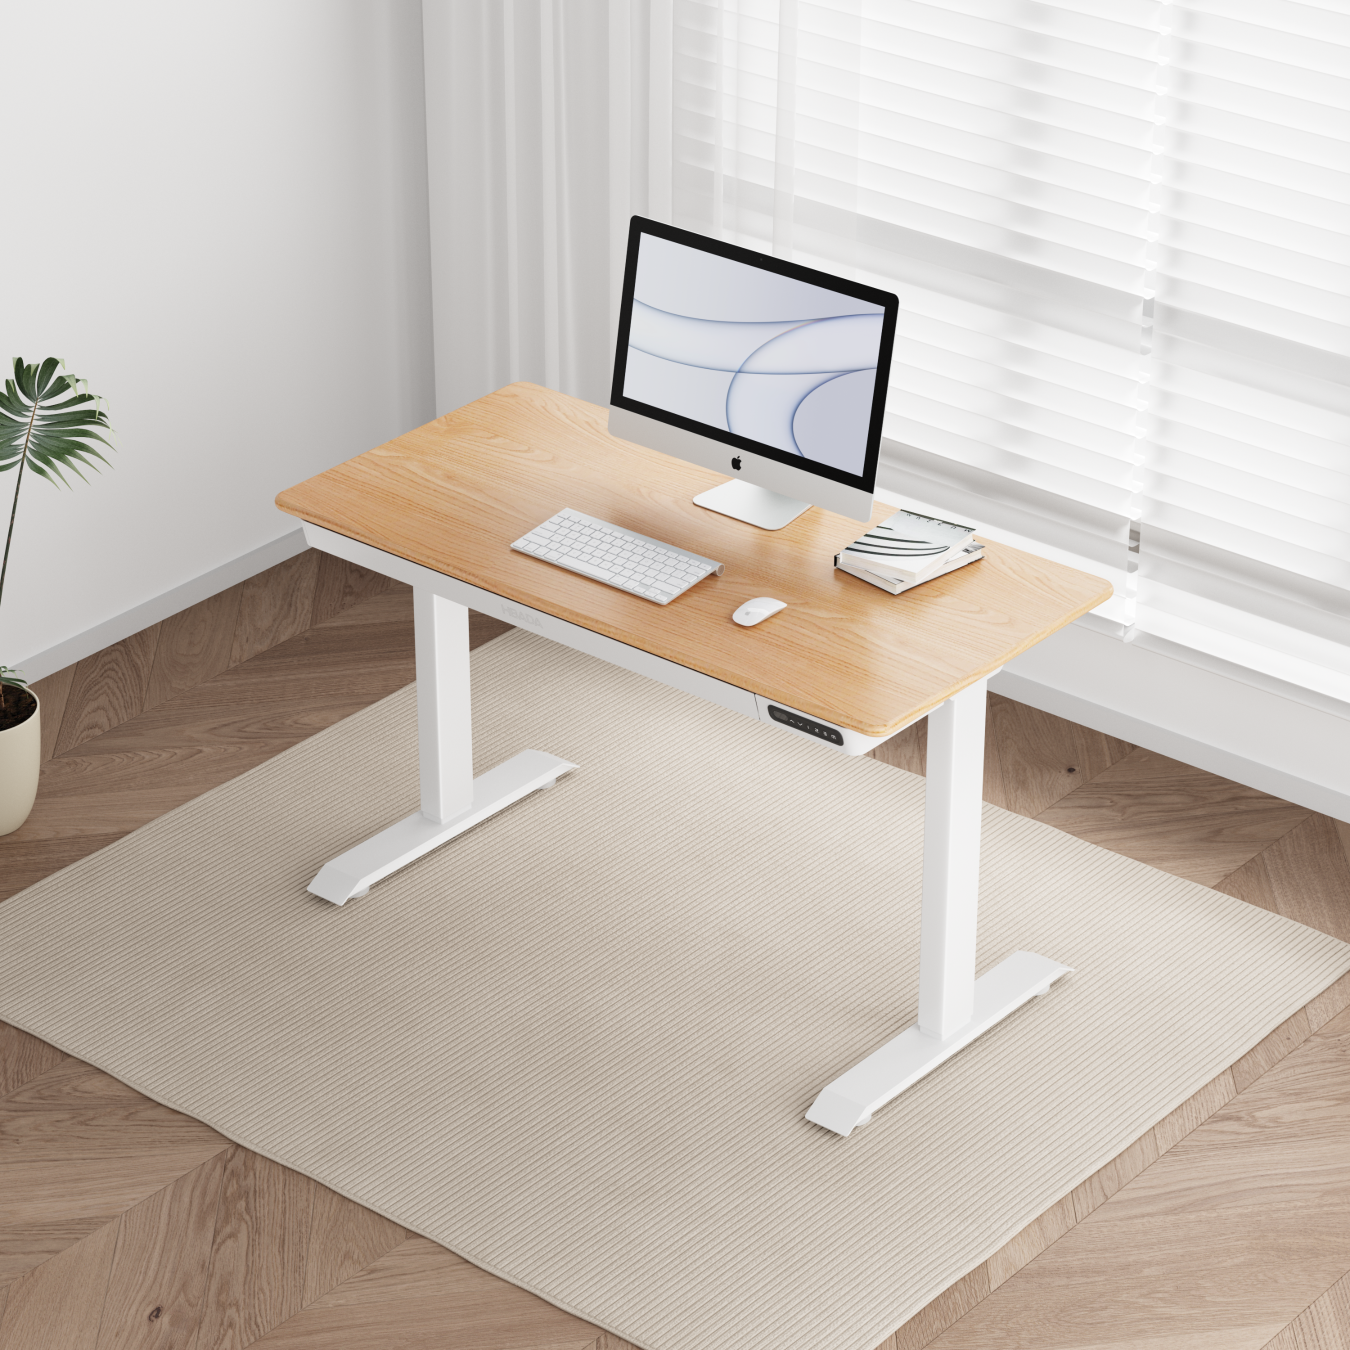 黑白调N301智能电动升降桌纯实木简约电脑桌学习书桌子高配原木色1.2m